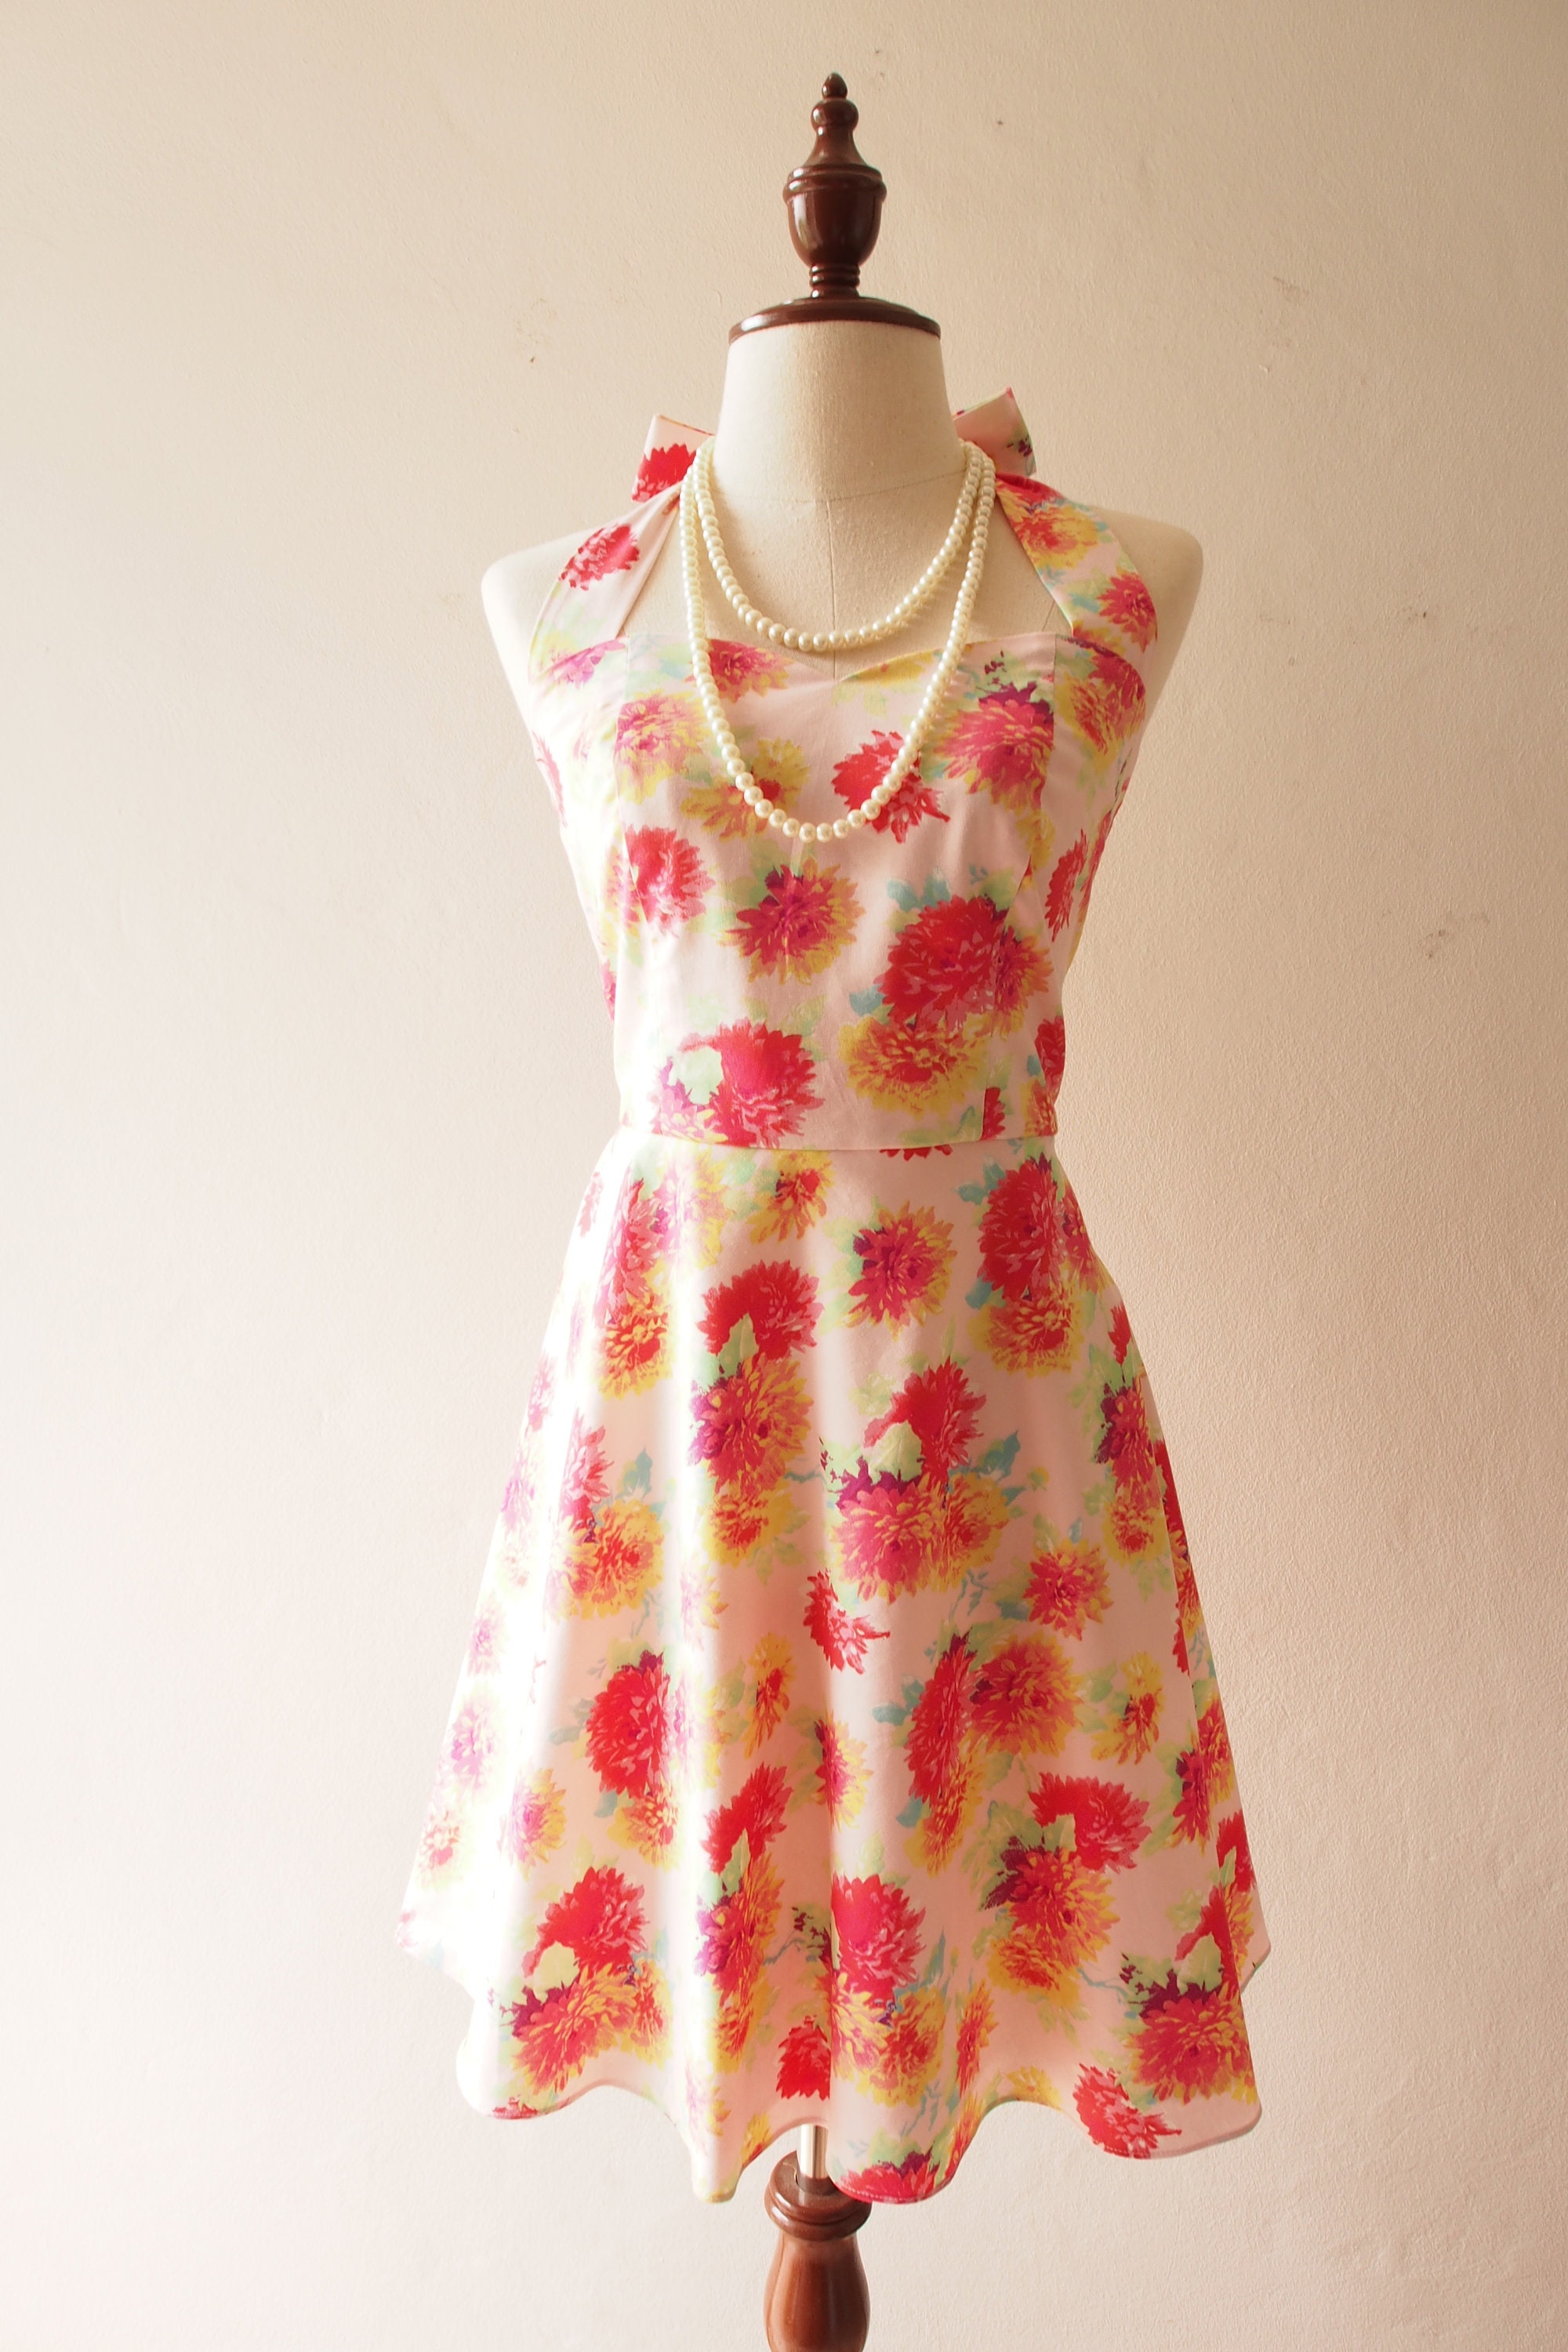 Sale Vintage Summer Dresses For Women, Short Dress Casual Dresses, Floral Sun Halter 1950